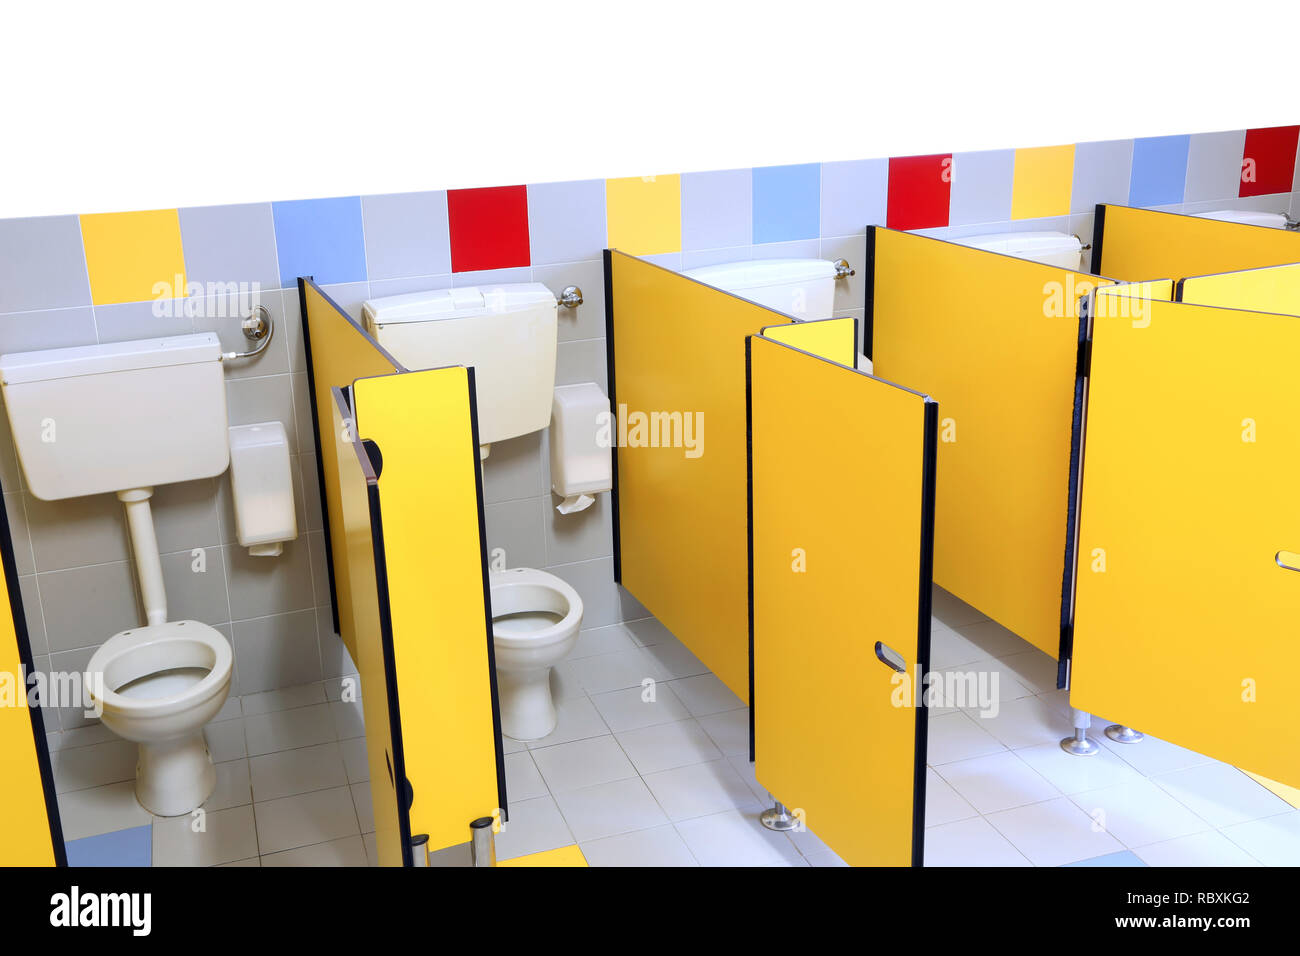 Petites cabines avec wc et petites portes jaunes d'une école maternelle de  bains Photo Stock - Alamy